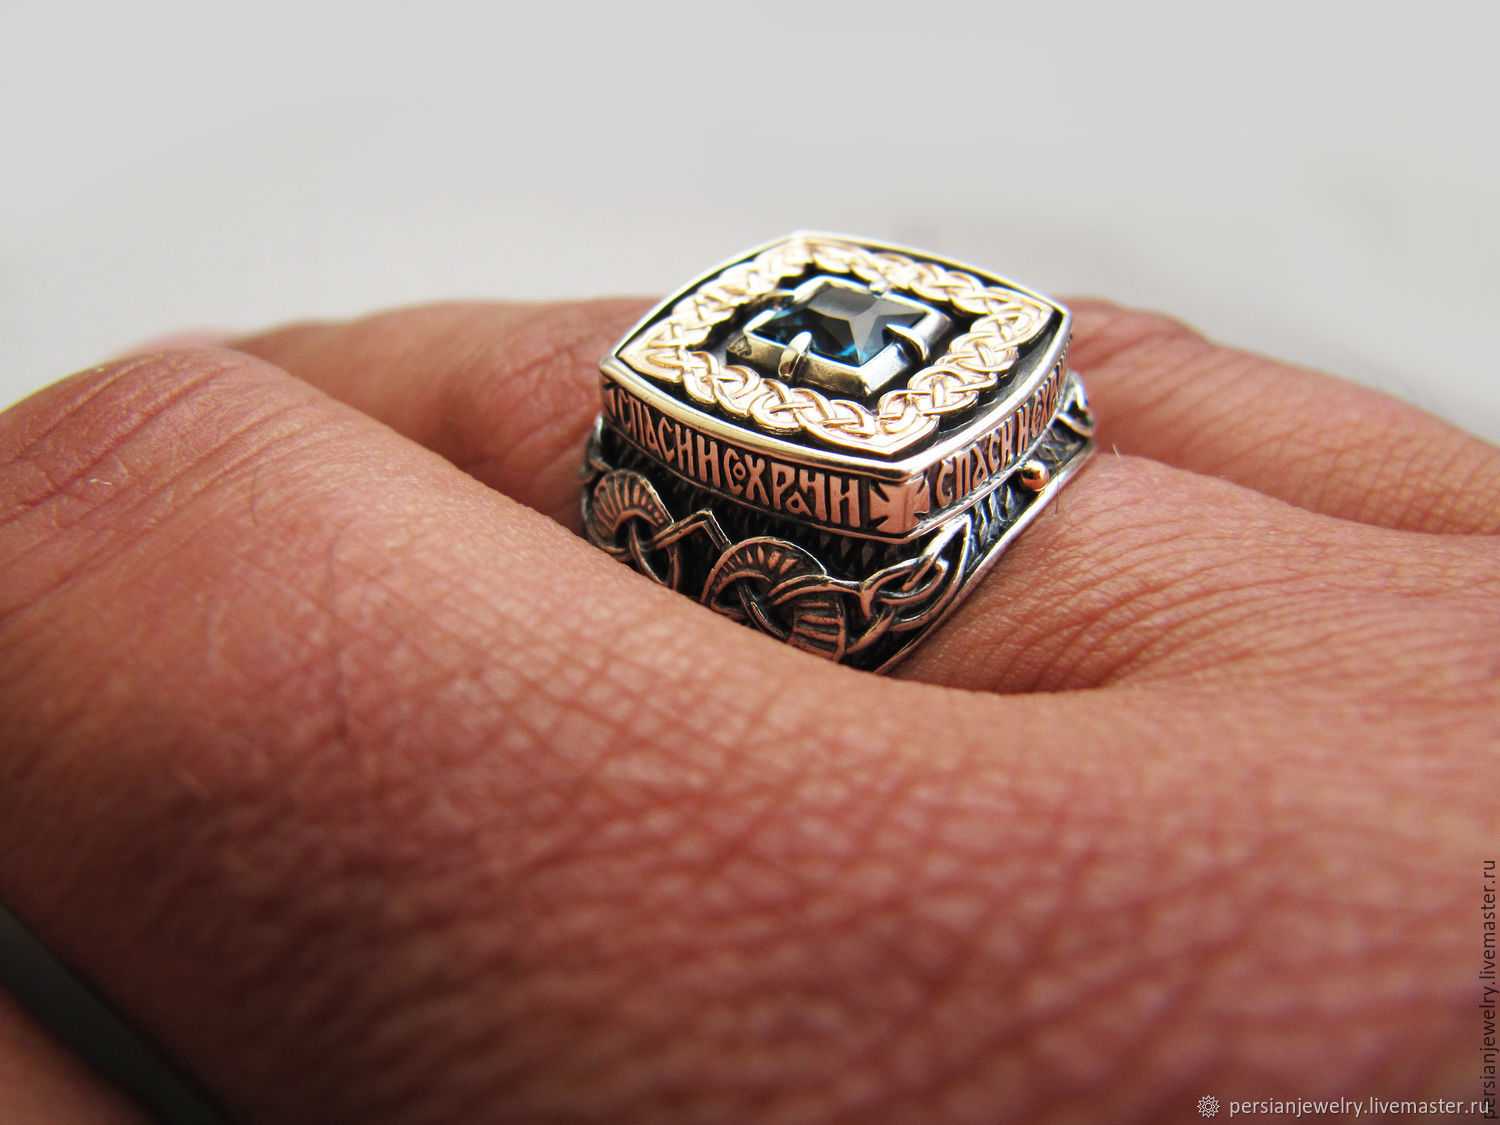 На какой руке и на каком пальце носить кольцо чтобы привлечь удачу, любовь или деньги?